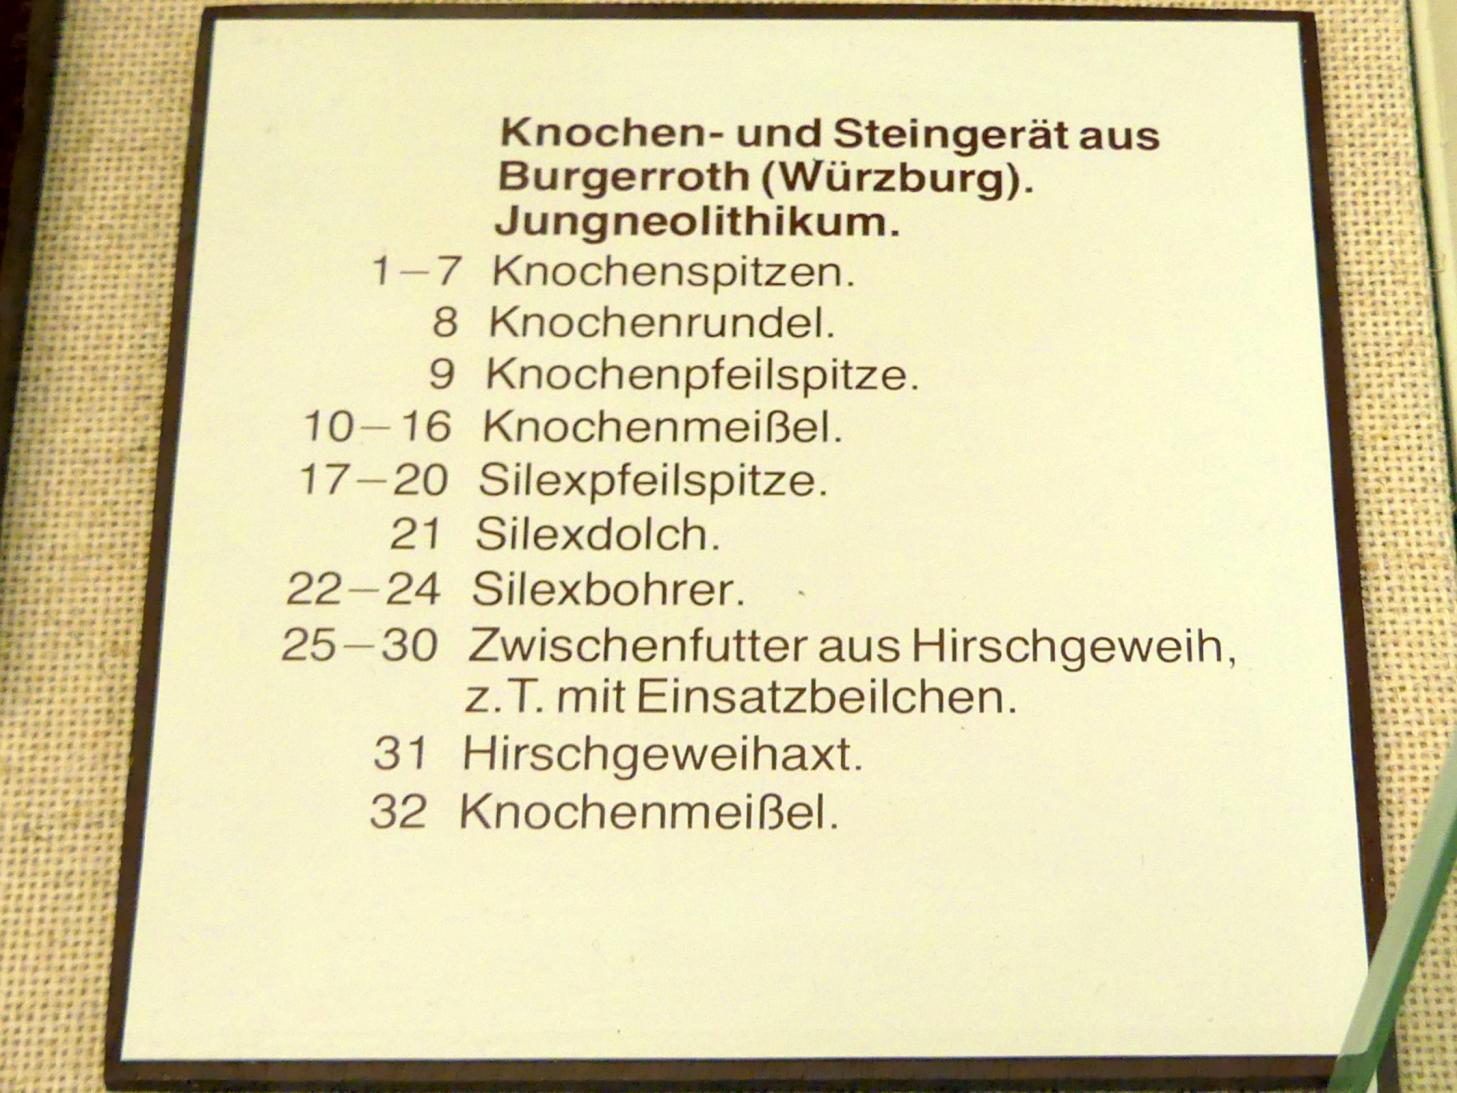 Zwischenfutter, z.T. mit Einsatzbeilchen, Jungneolithikum, 4400 - 3500 v. Chr., Bild 2/2